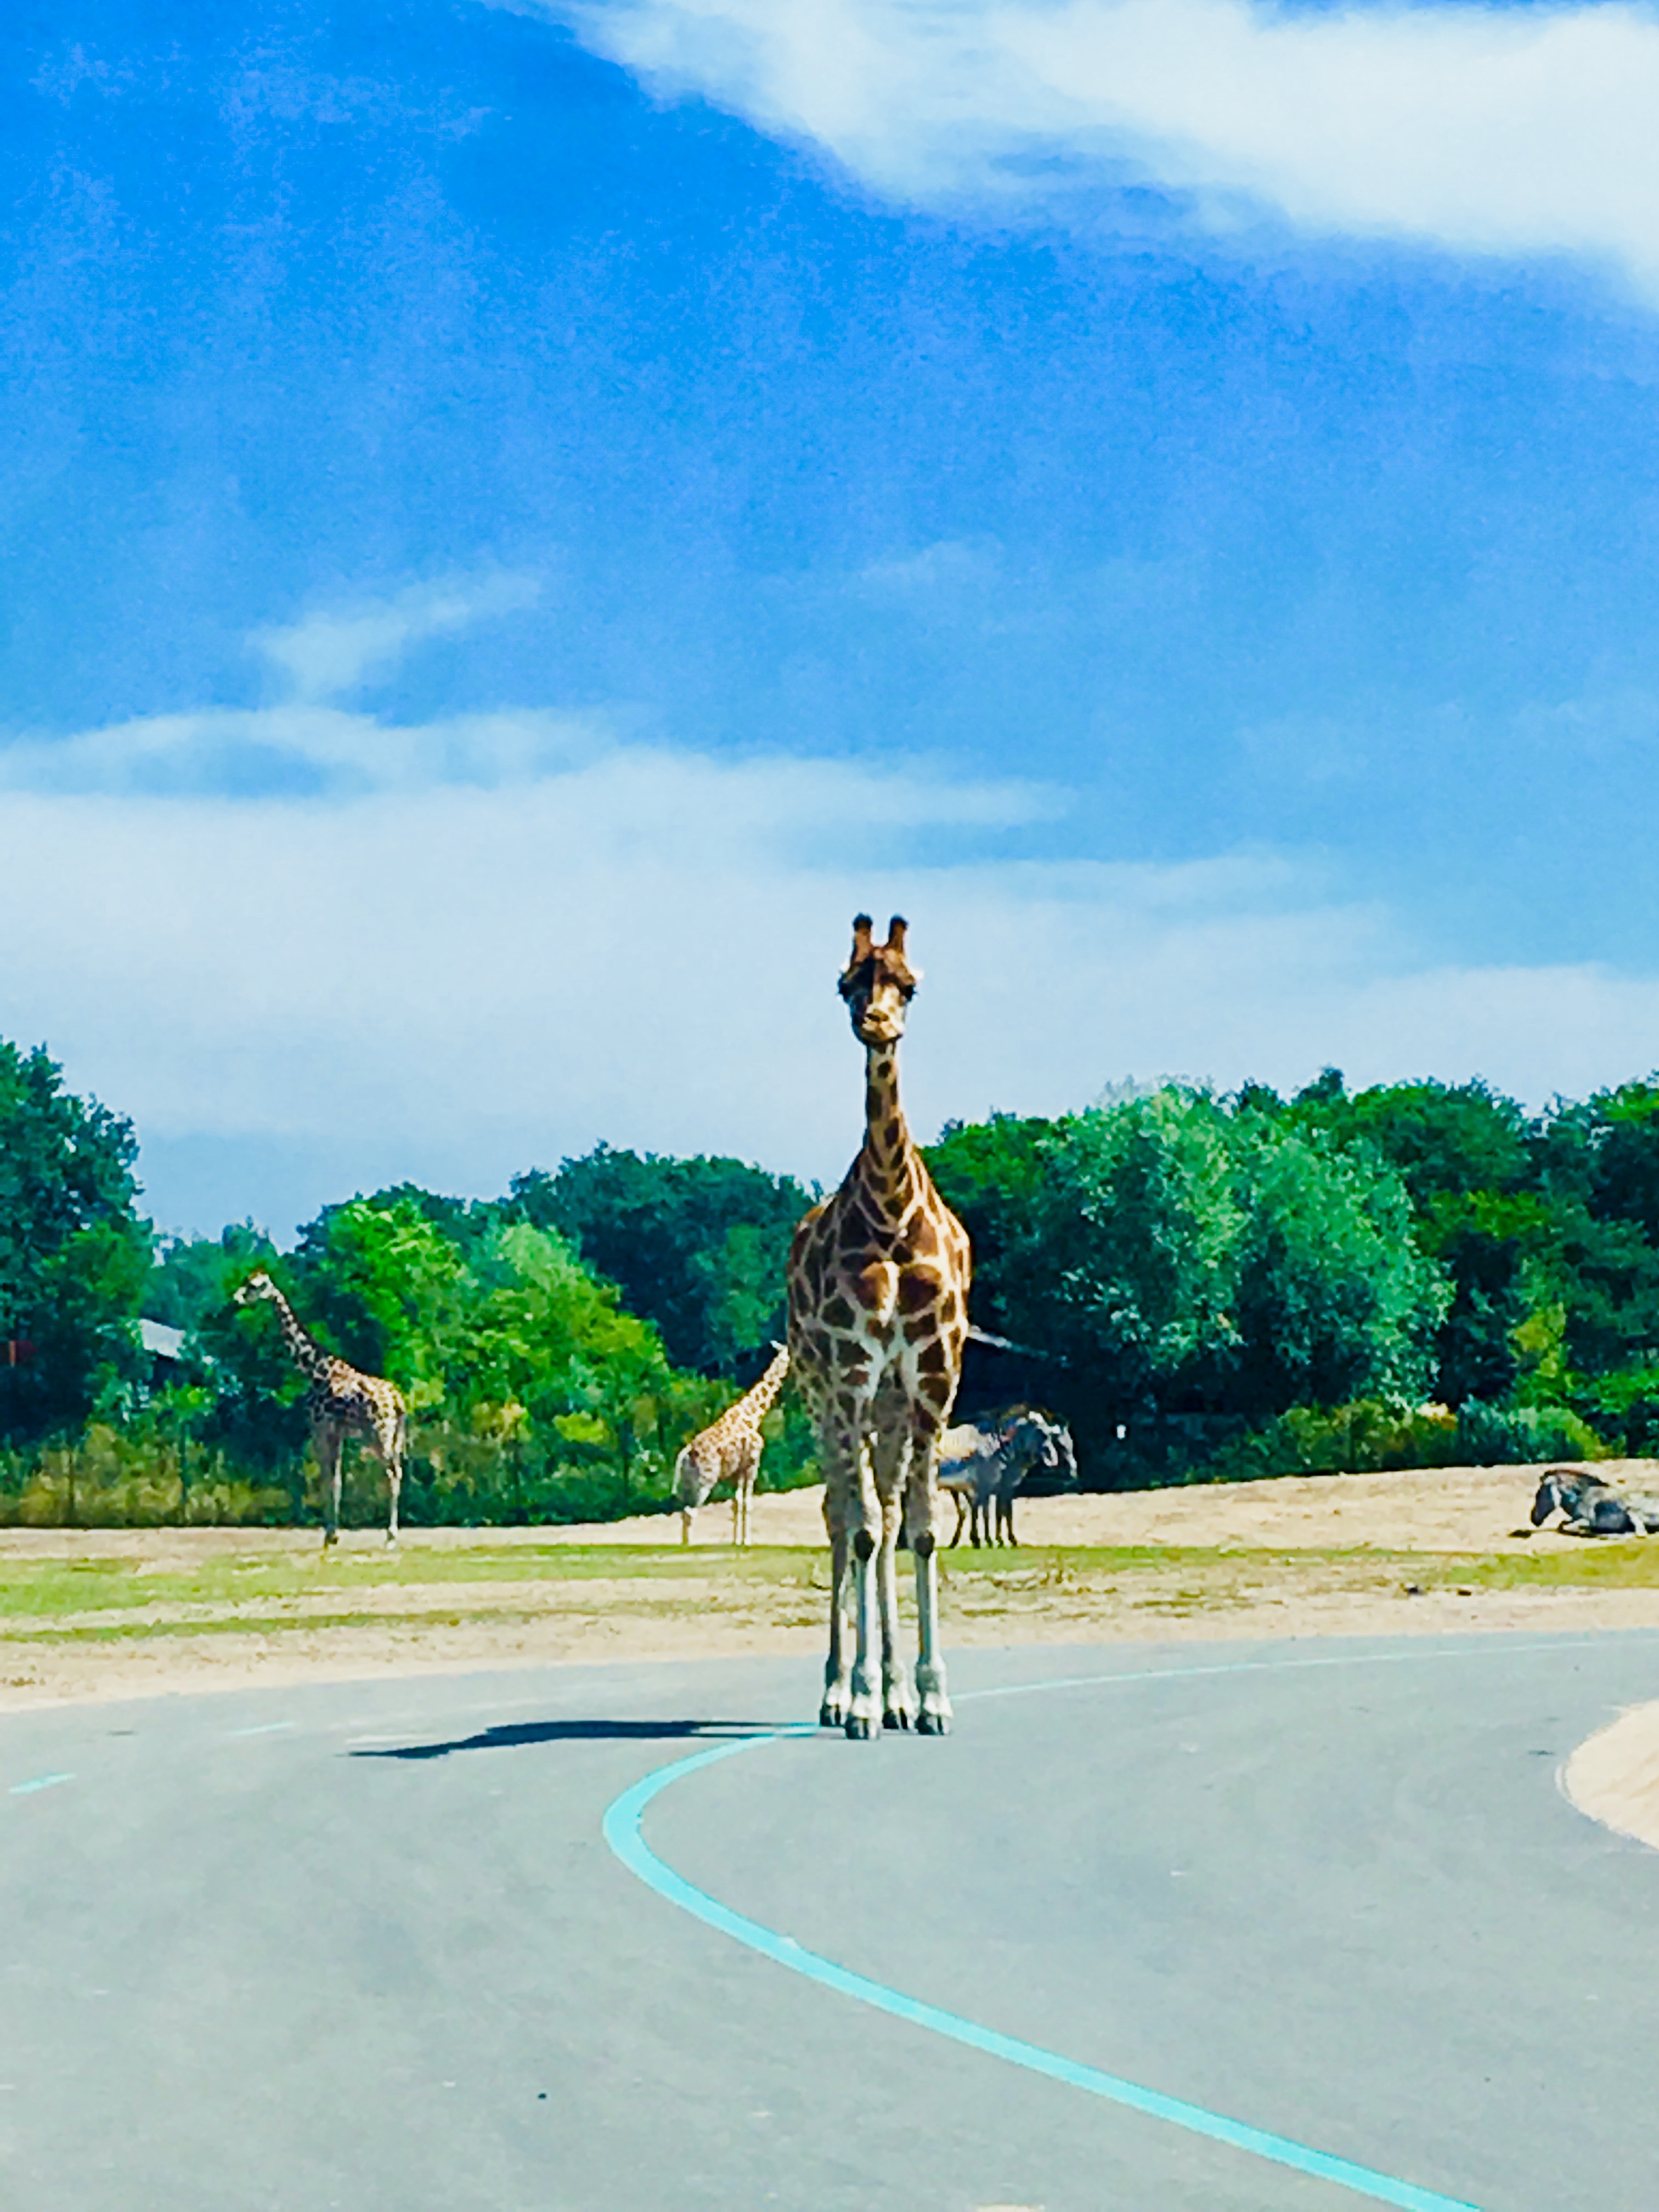 Internationale Dag van de Giraffe